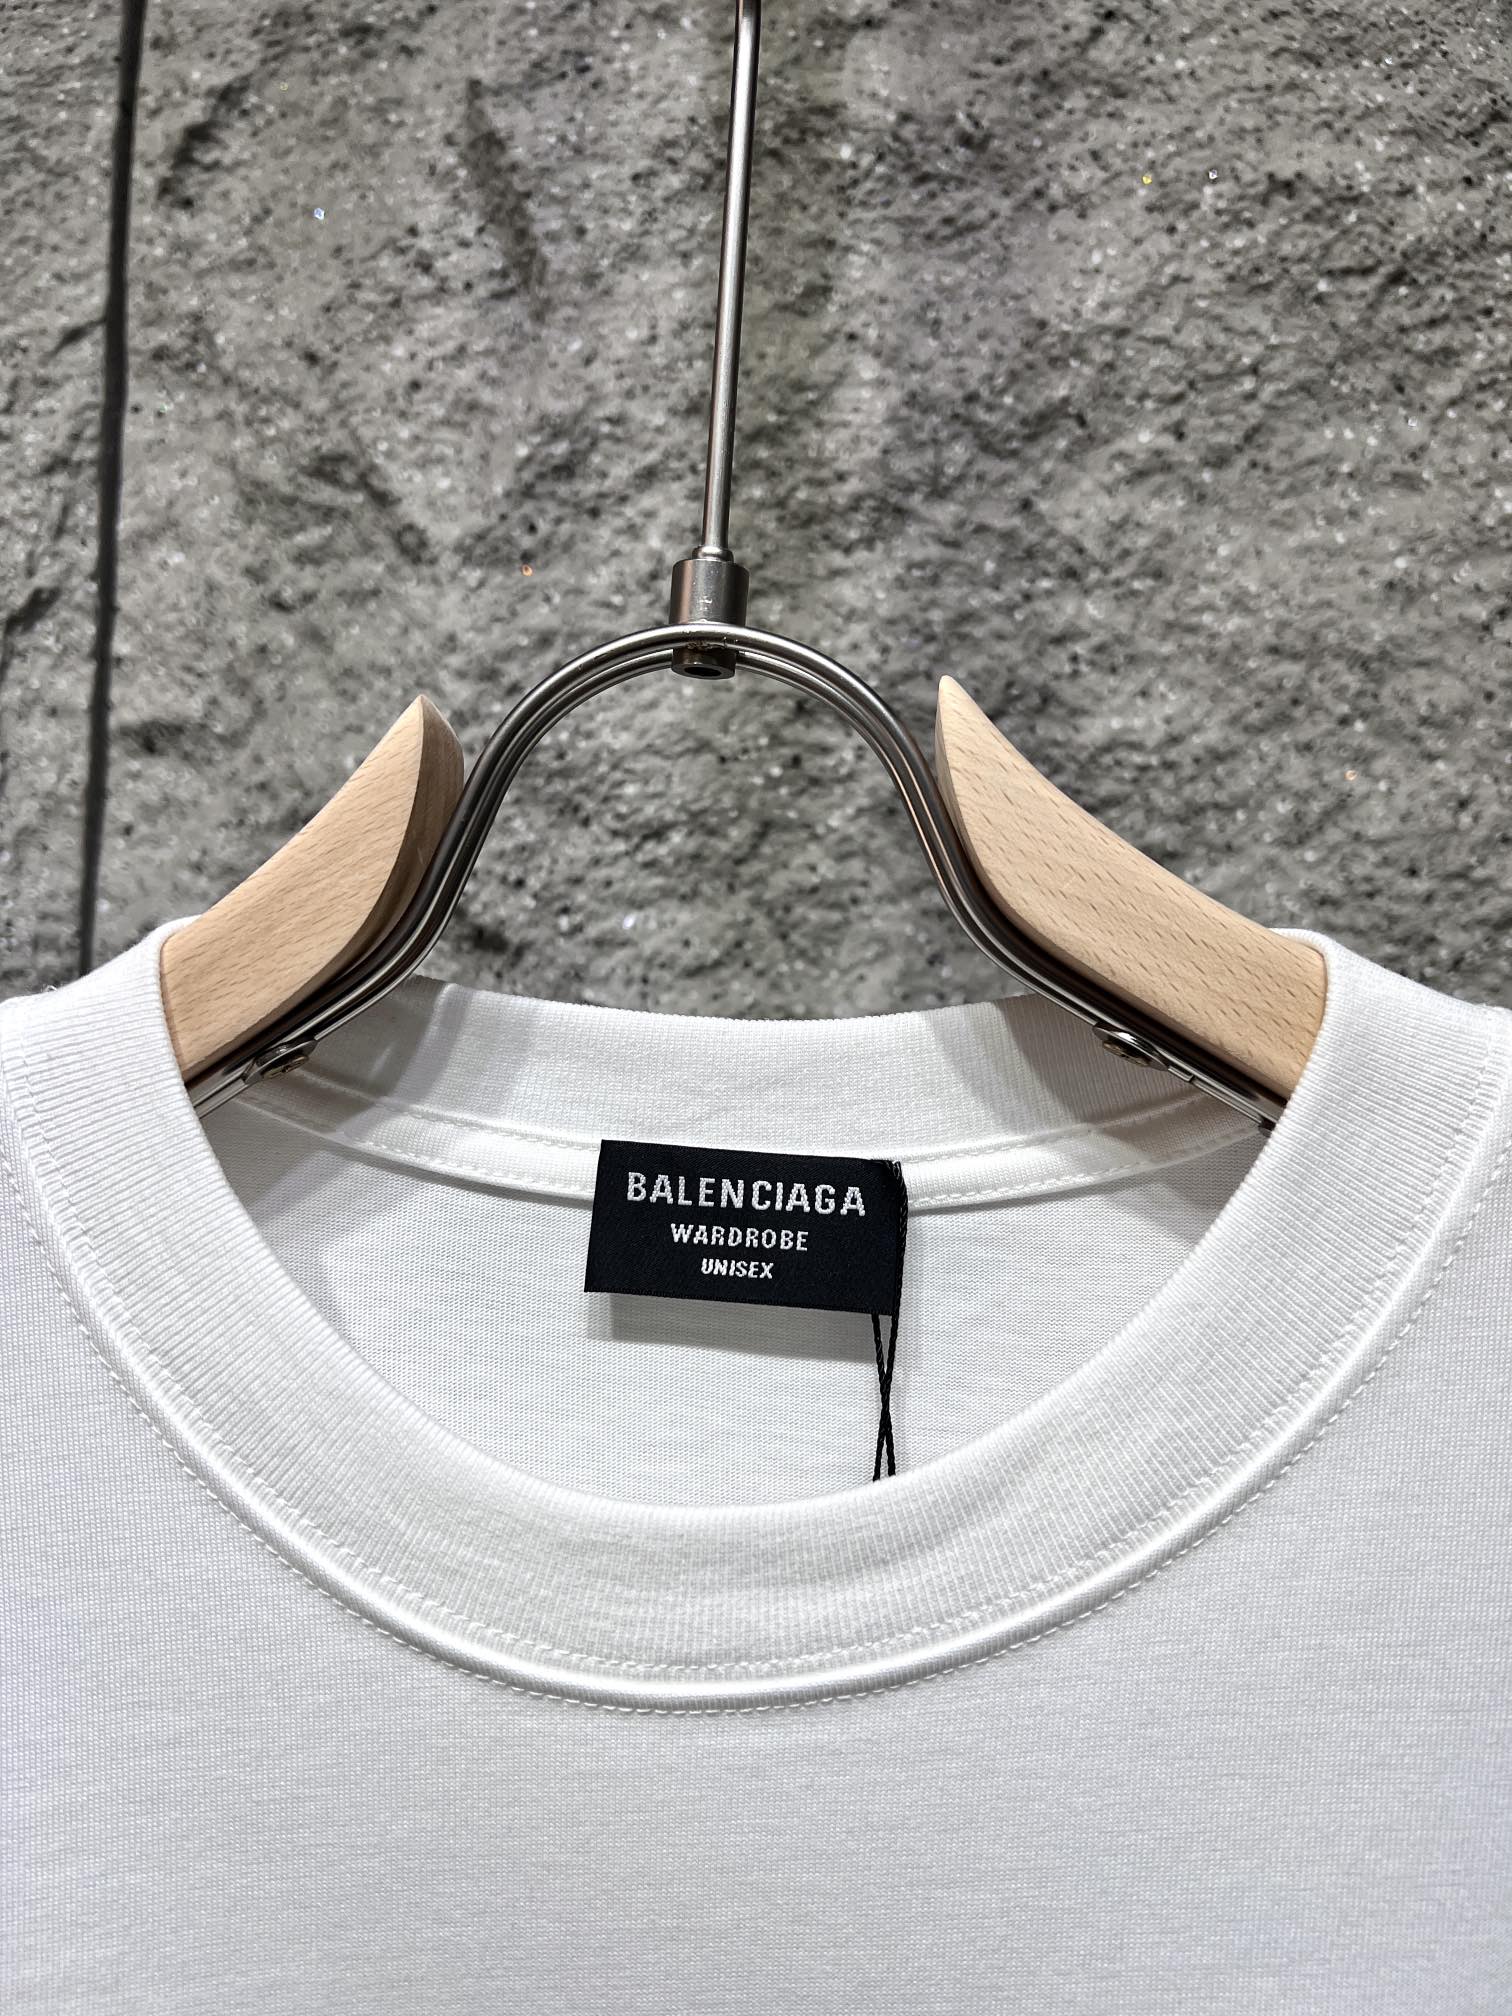 バレンシアガtシャツ メルカリコピー 純綿 トップス 半袖 ゆったり 柔らかい 期間限定品 ファッション ホワイト_2